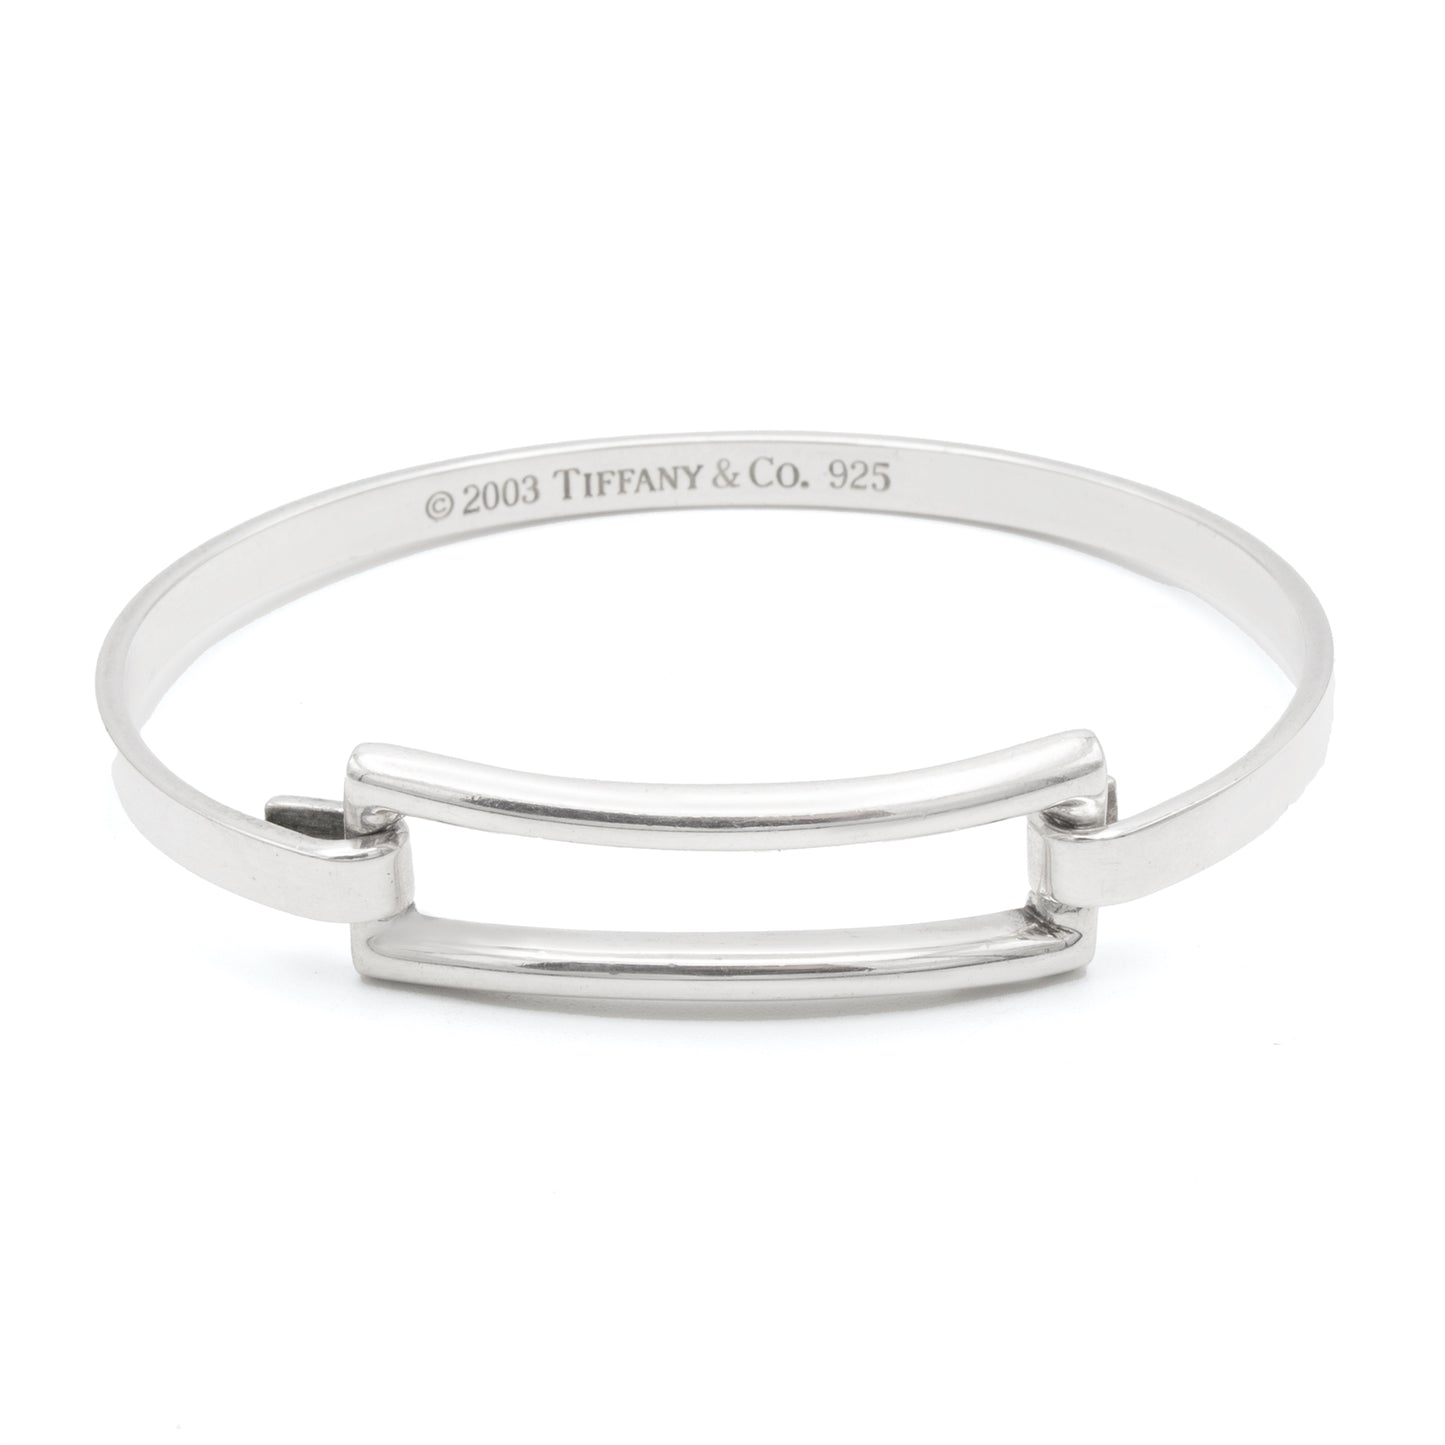 Tiffany & Co silver square bracelet